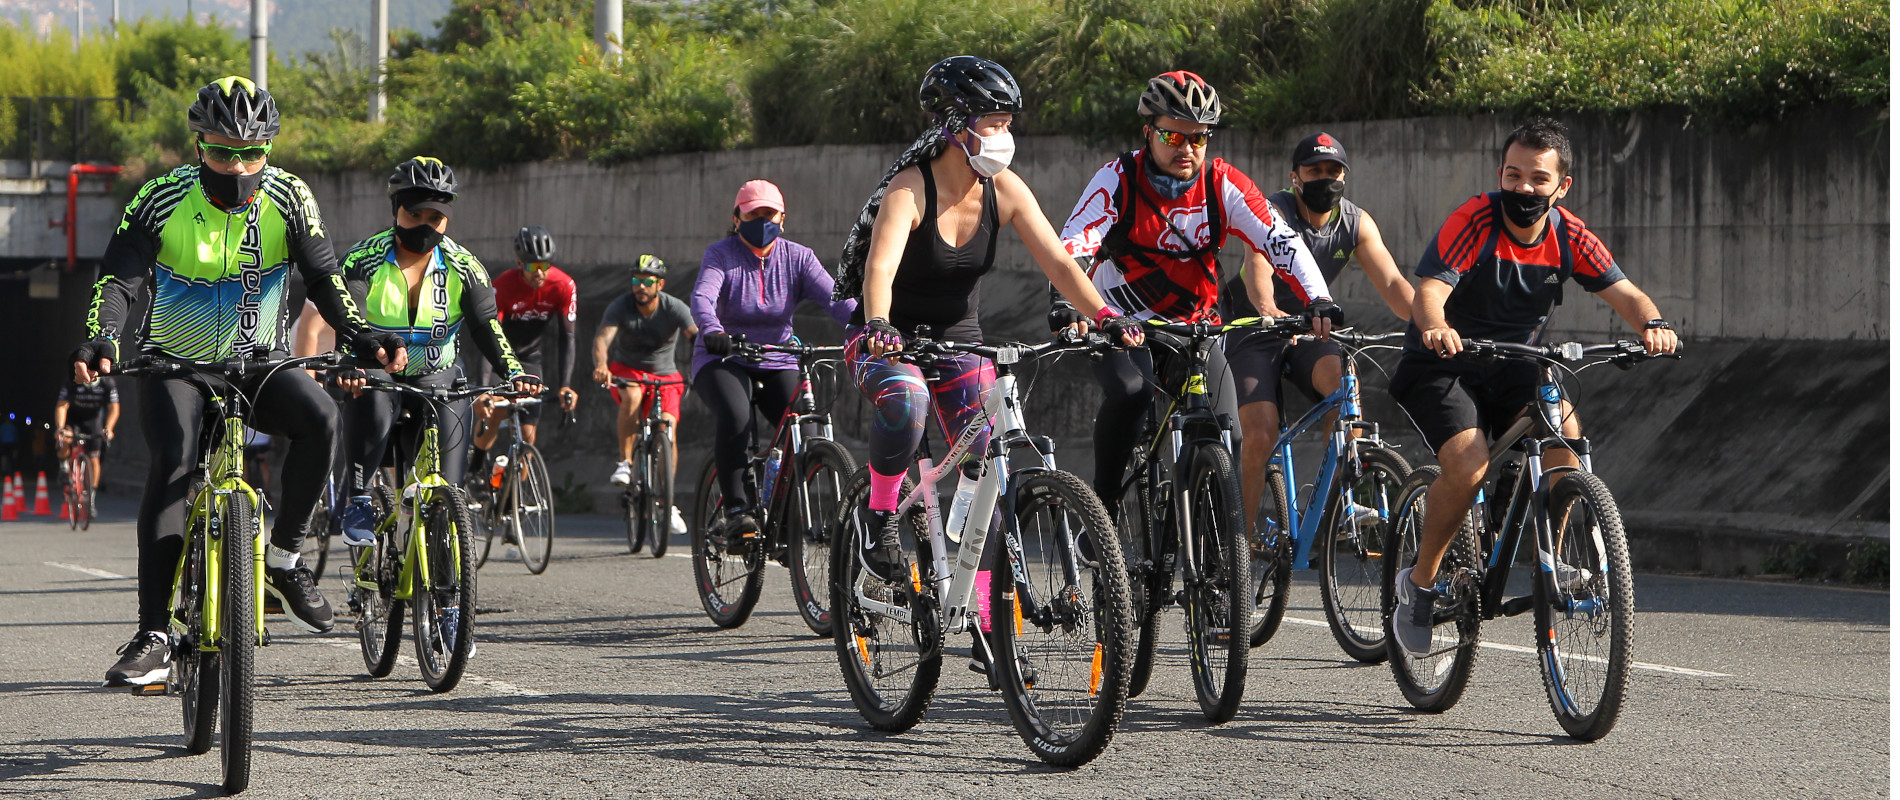 El pasado domingo 17 de enero se tenía planeado reabrir la ciclovía en Medellín, pero por el toque de queda para todo ese fin de semana, se corrió la fecha para este domingo 24 de enero. Foto: Instituto de Deportes y Recreación de Medellín (Inder)